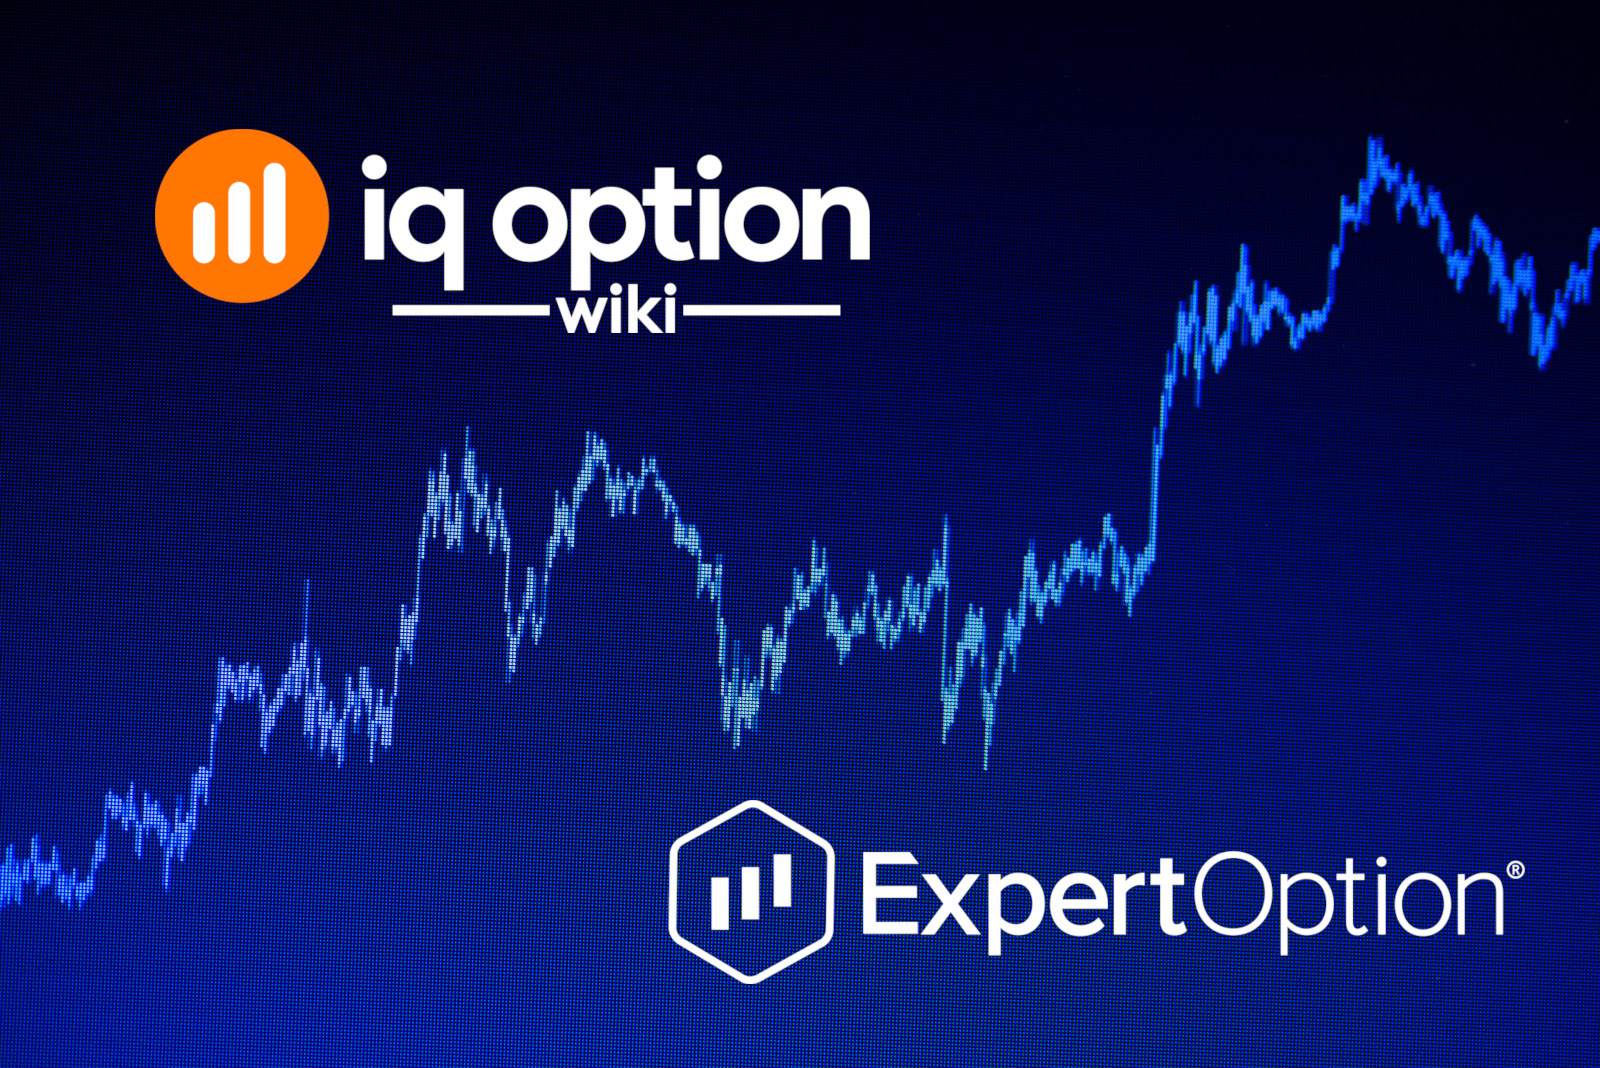 iq option vs expert option